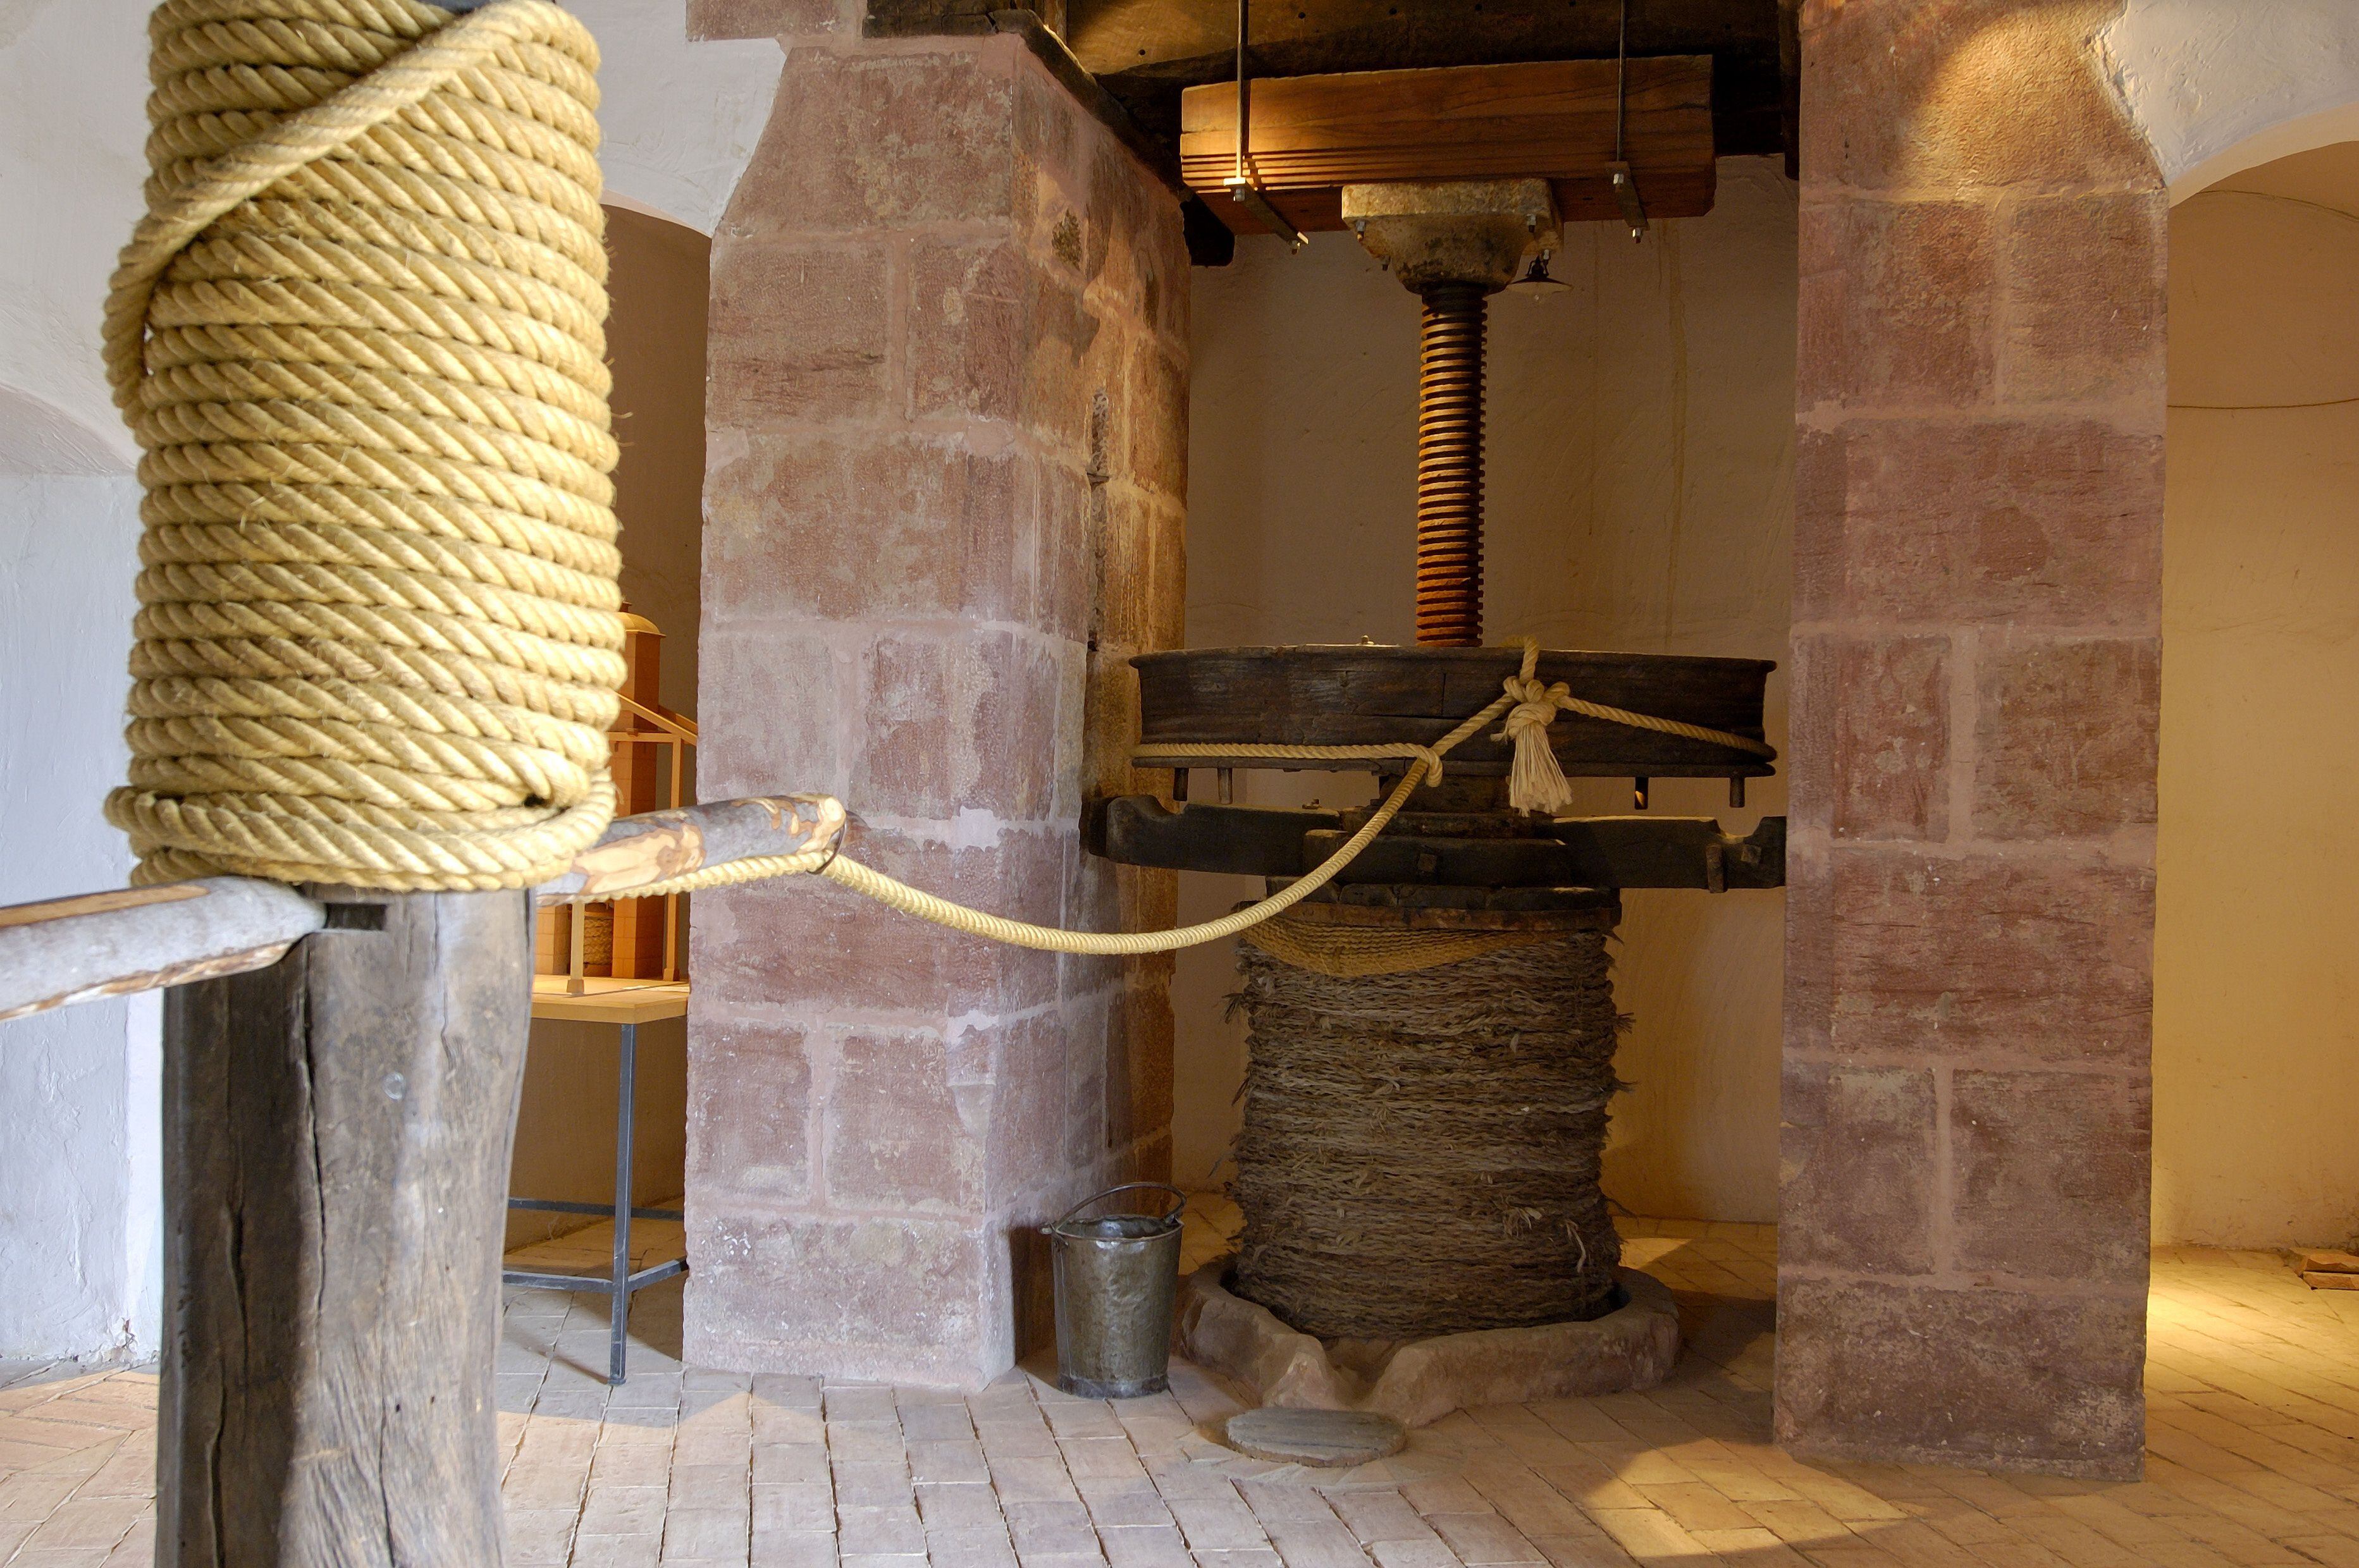 Uno de los molinos expuestos en el Museo de la Cultura del Olivo, cerca de Baeza.